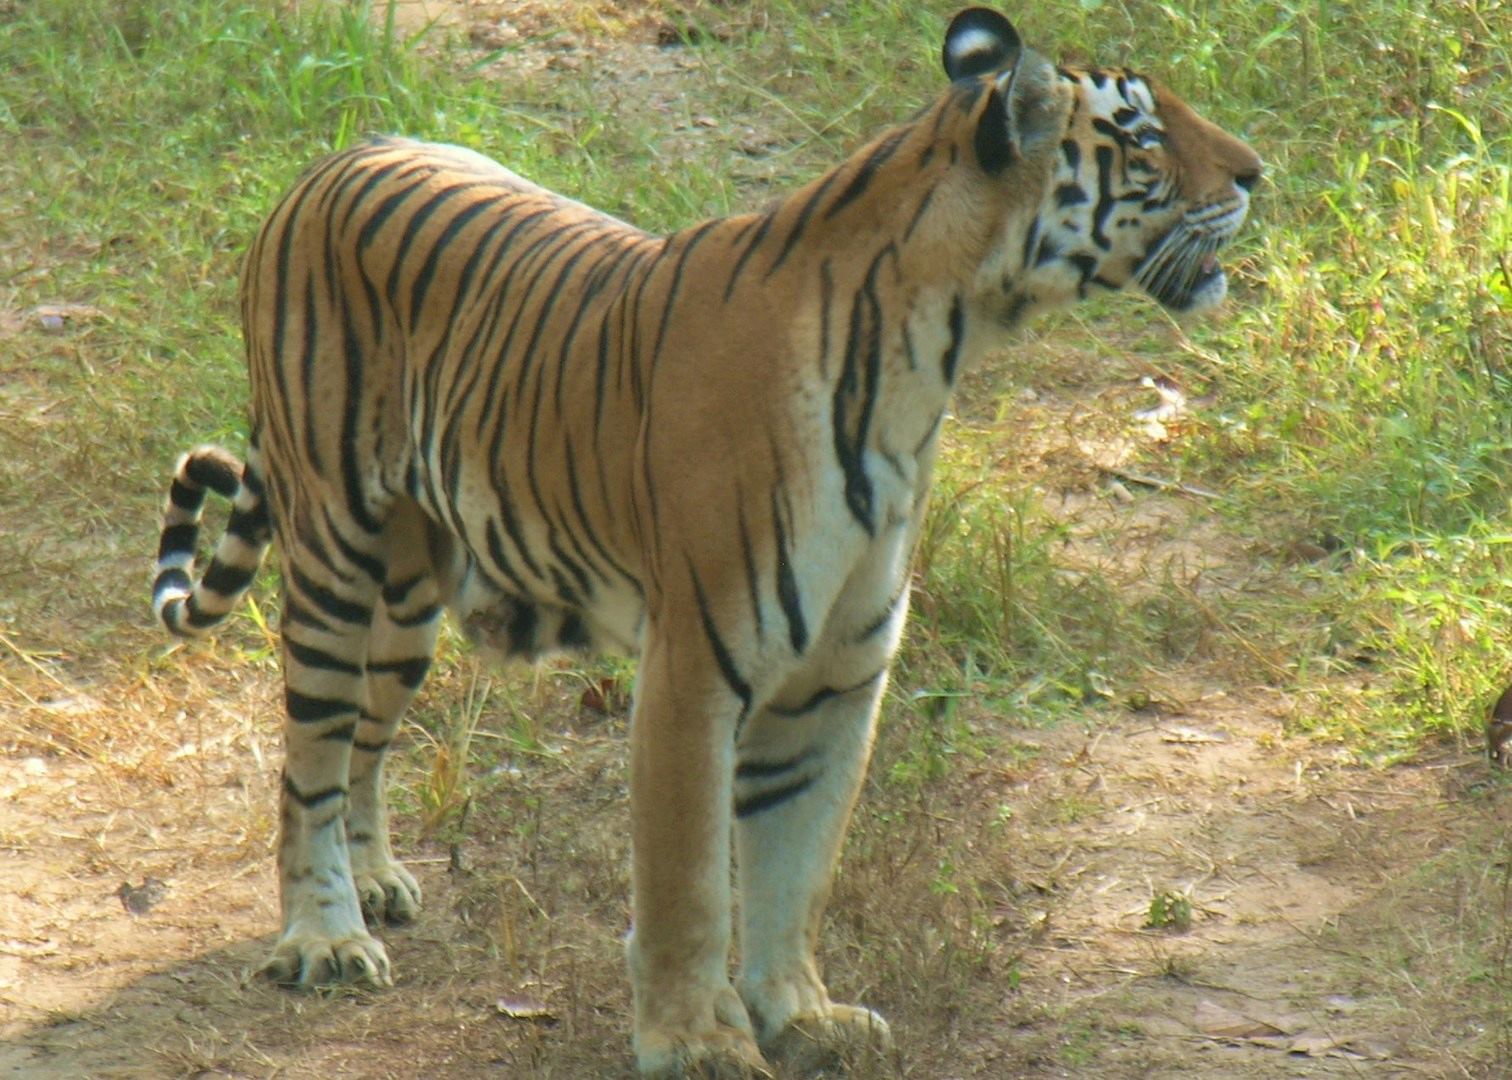 sundarbans tiger reserve best time to visit